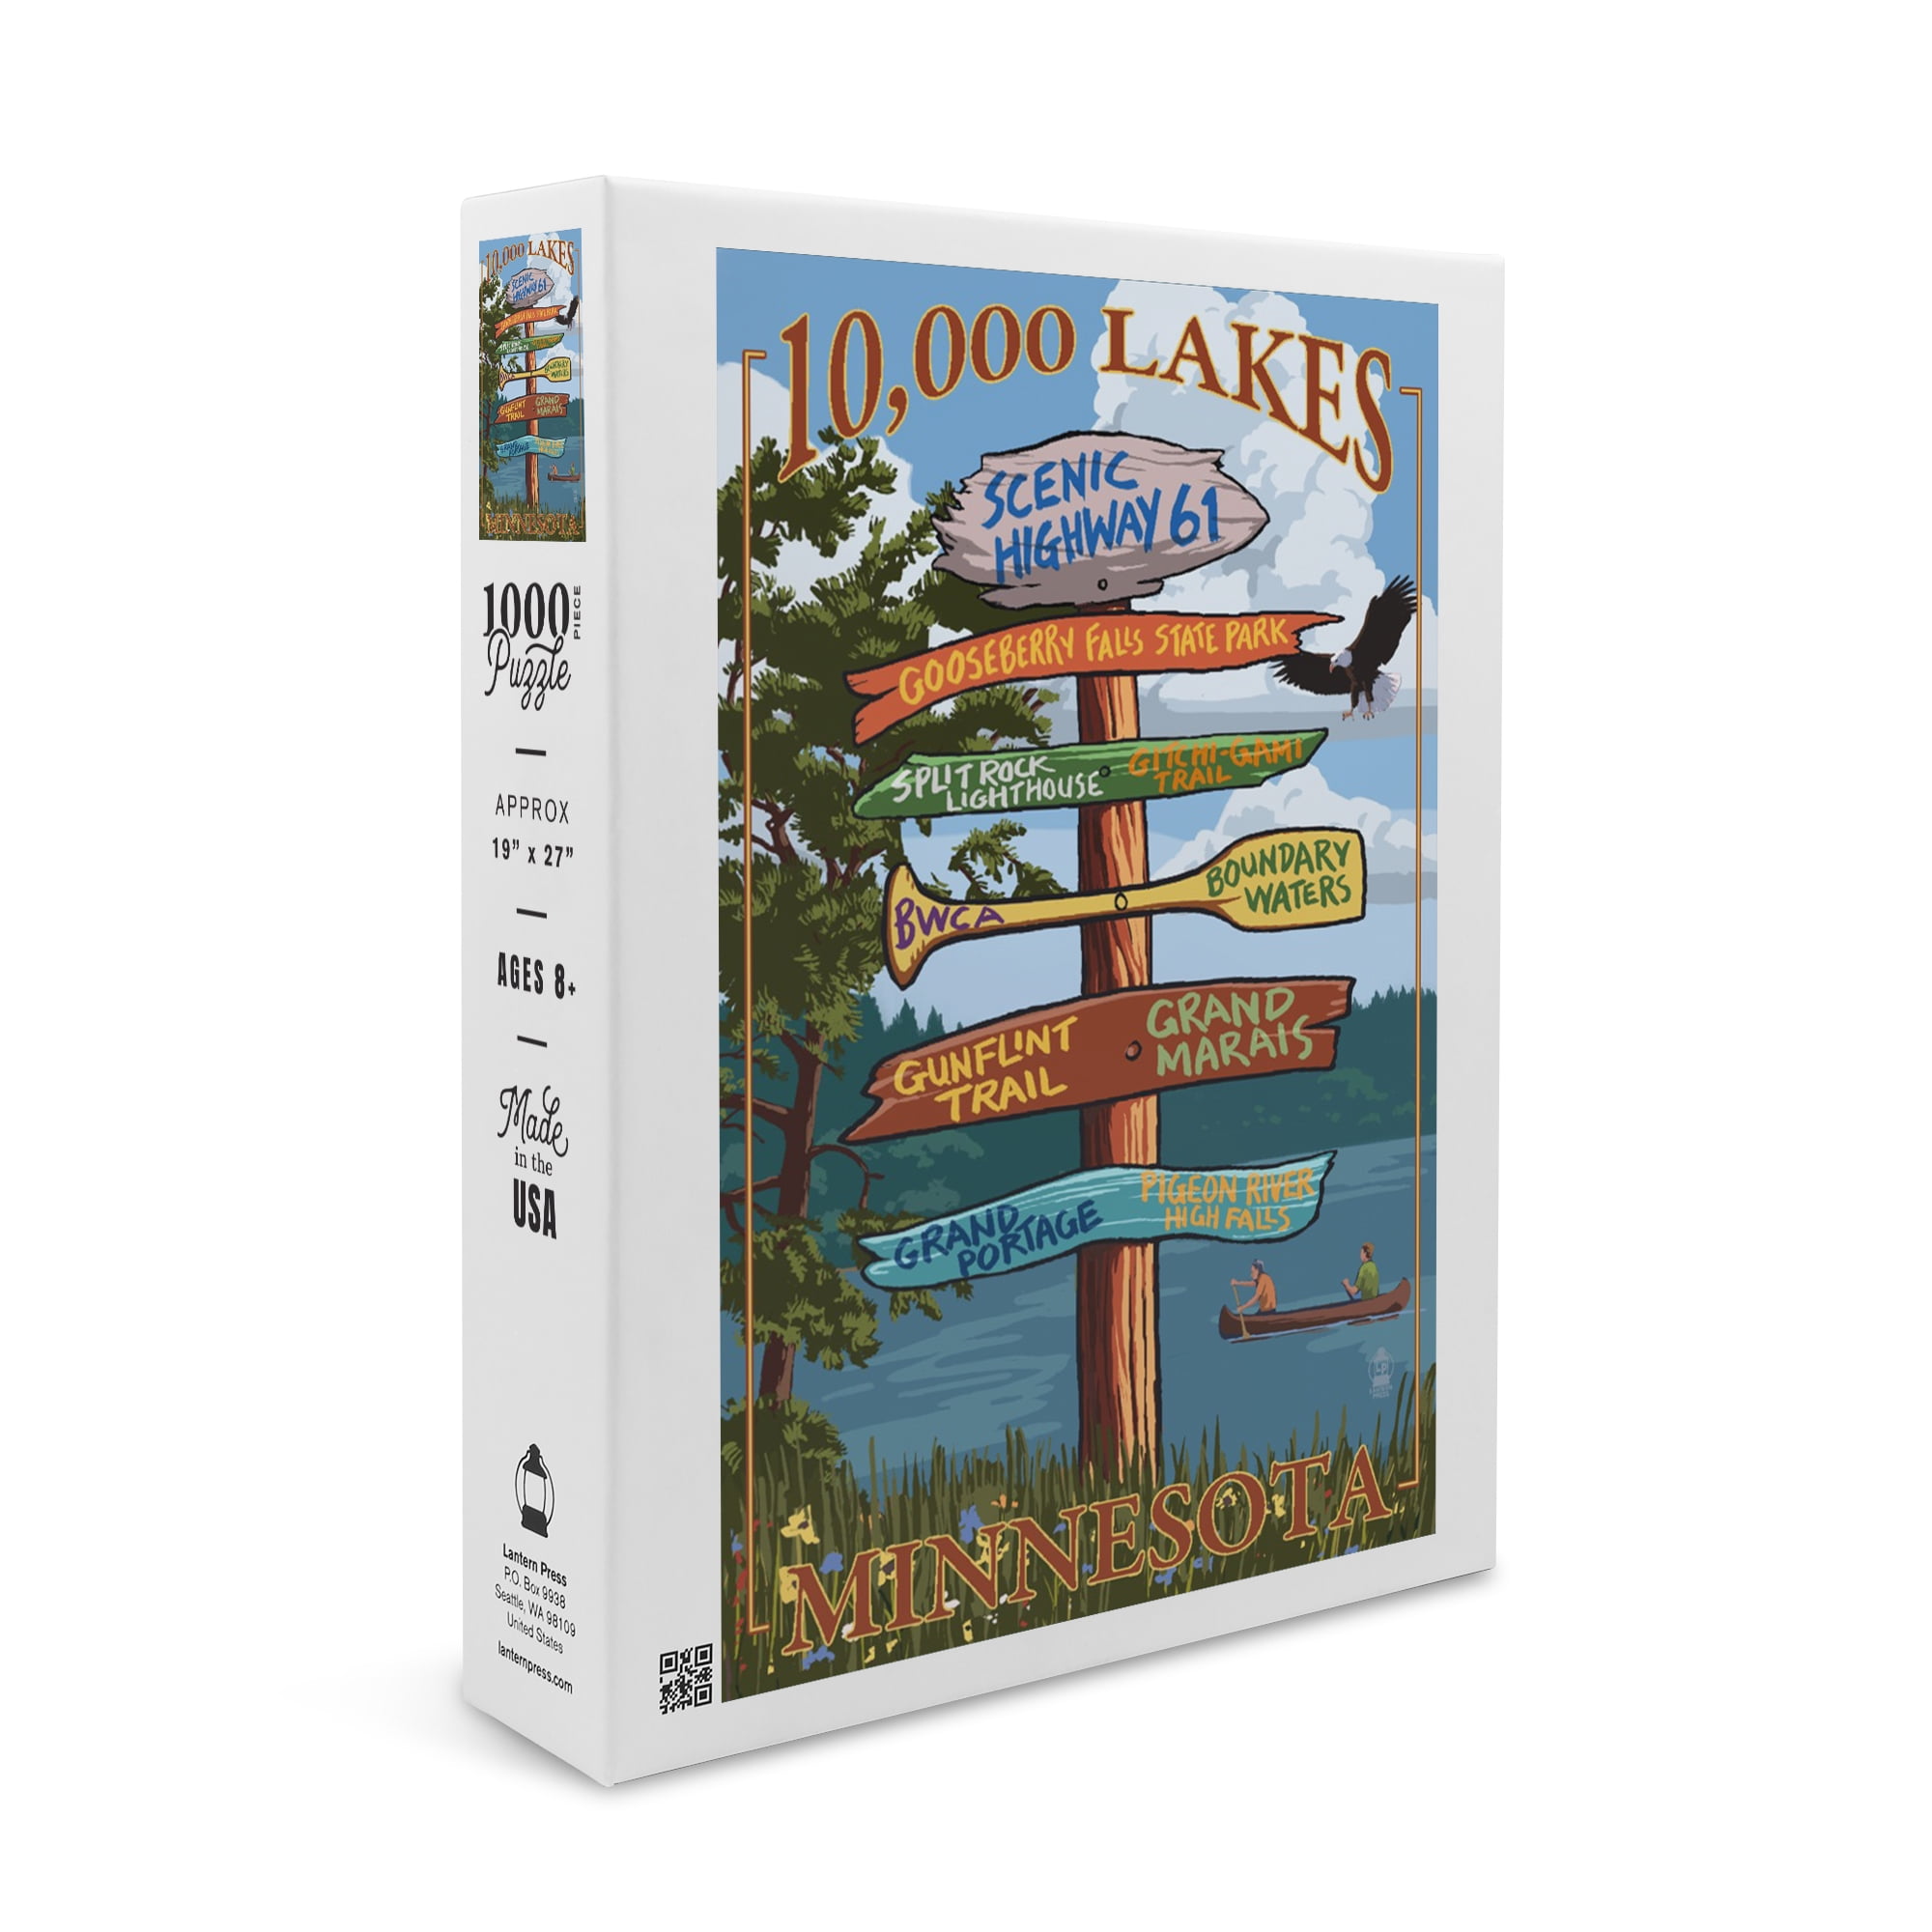 Puzzle, Minnesota, 10,000 Lakes, Destinations Sign, 1000 Pieces